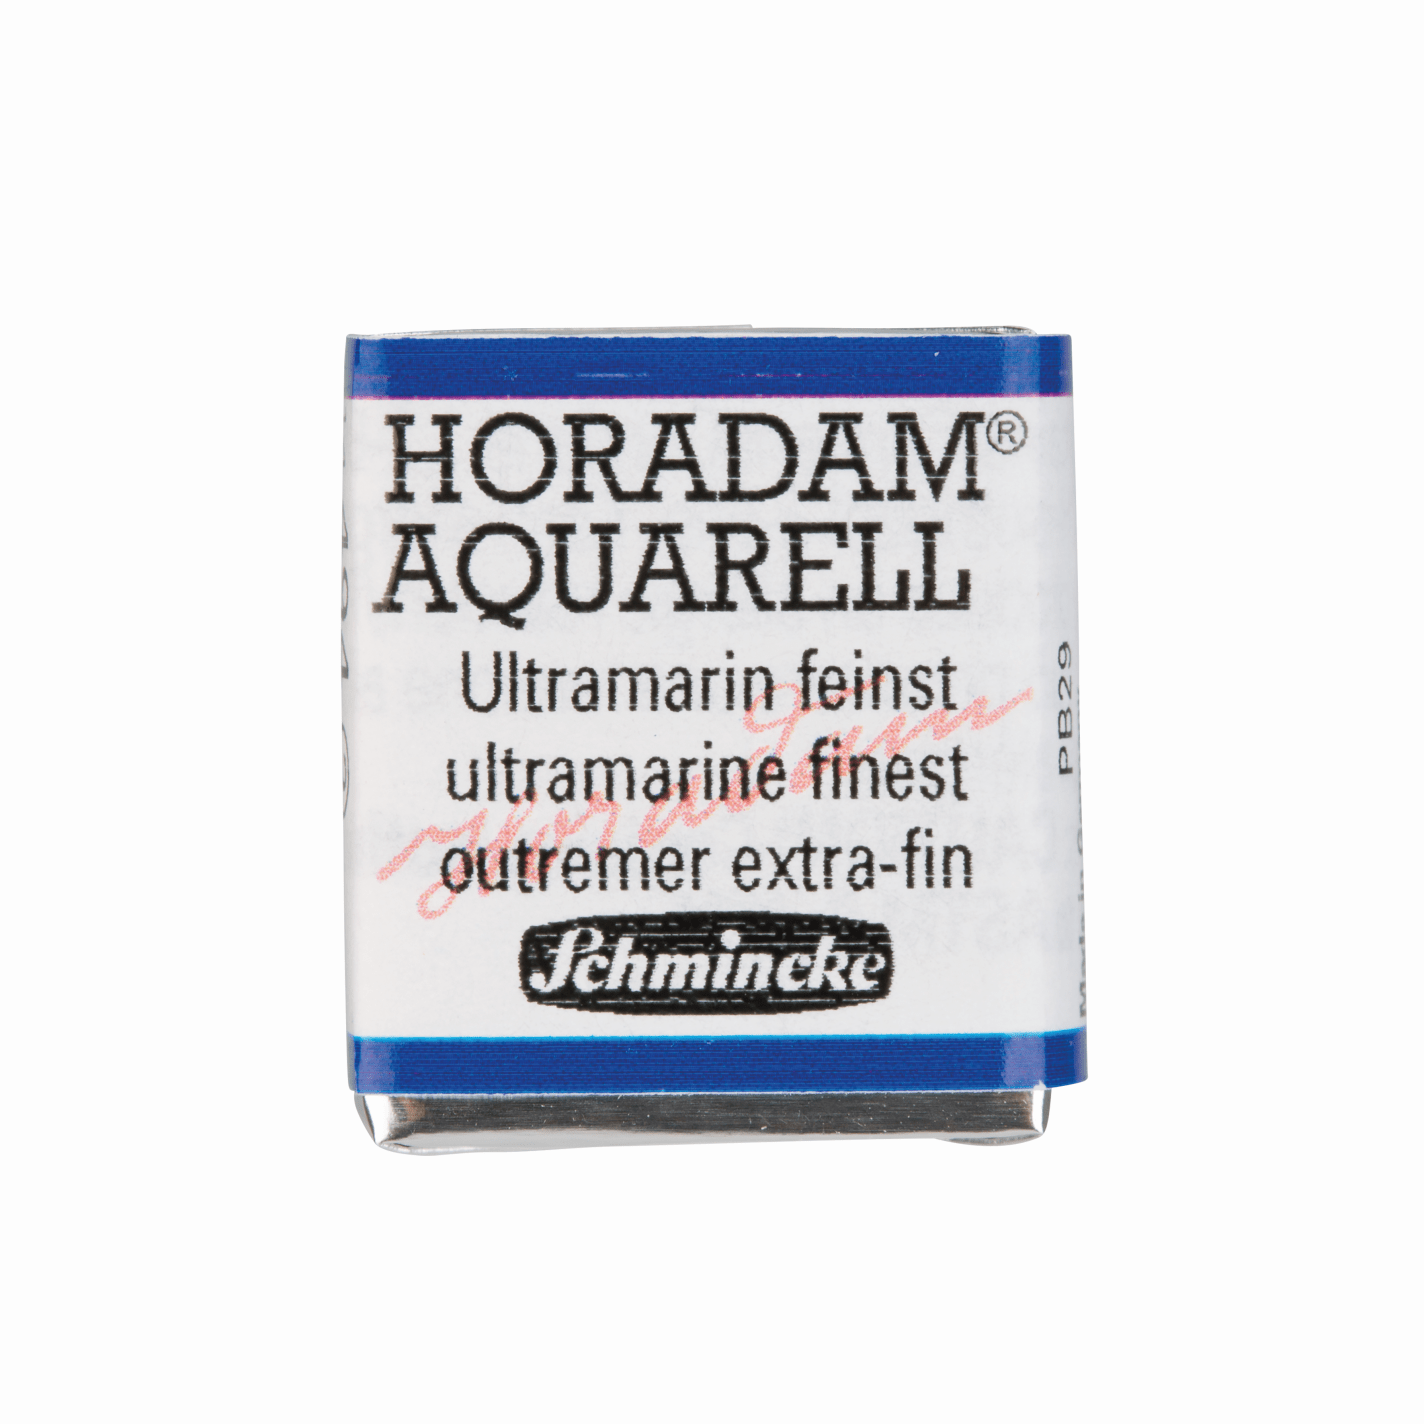 Schmincke Horadam Aquarell pans 1/2 pan Ultramarine Finest